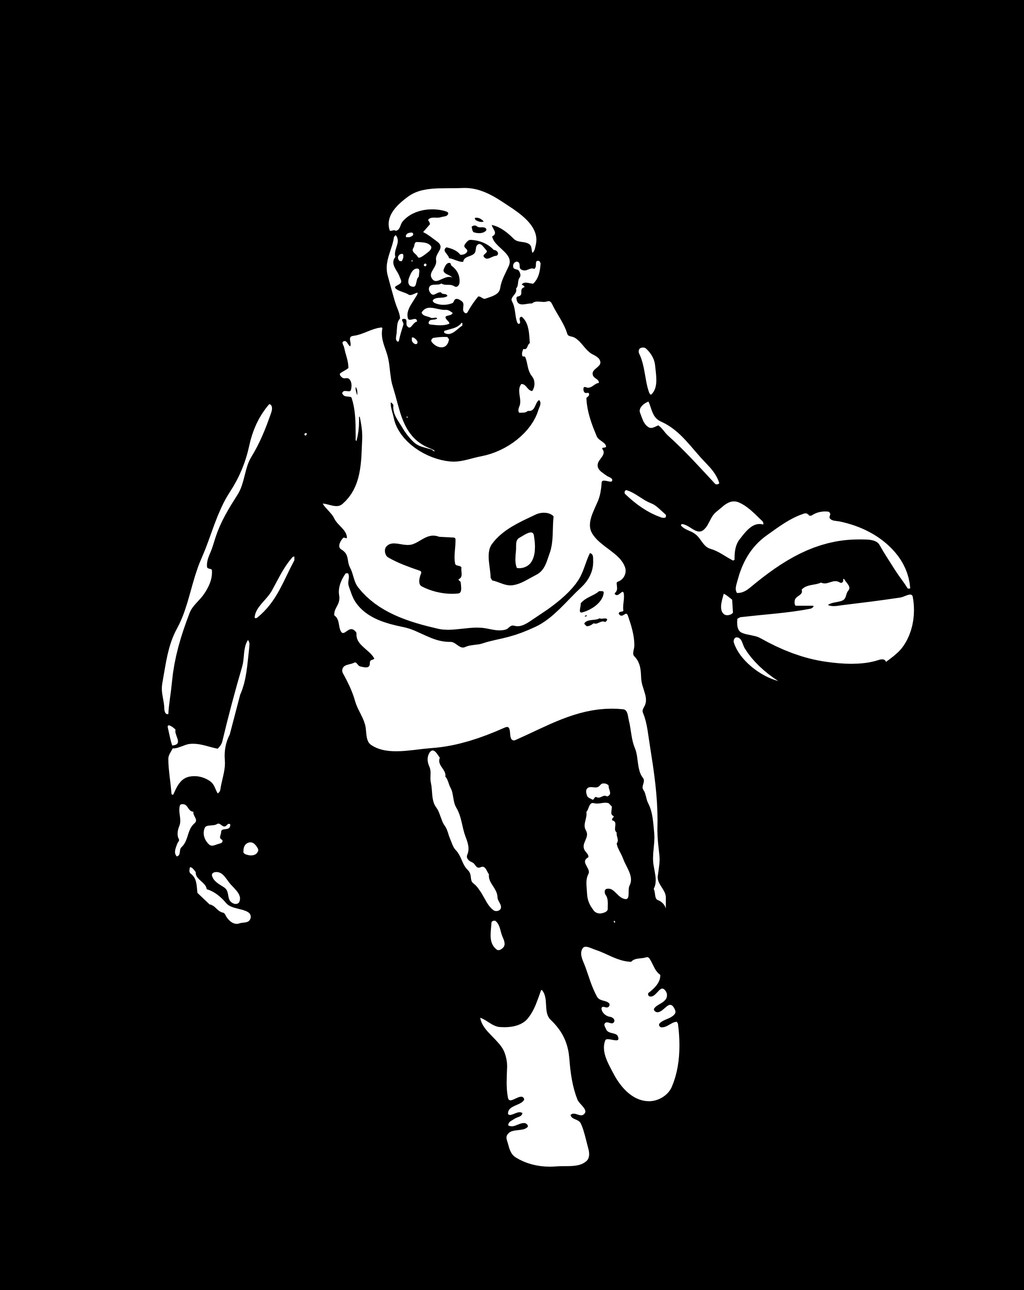 篮球运动员剪影插画人物简笔画图片设计素材_